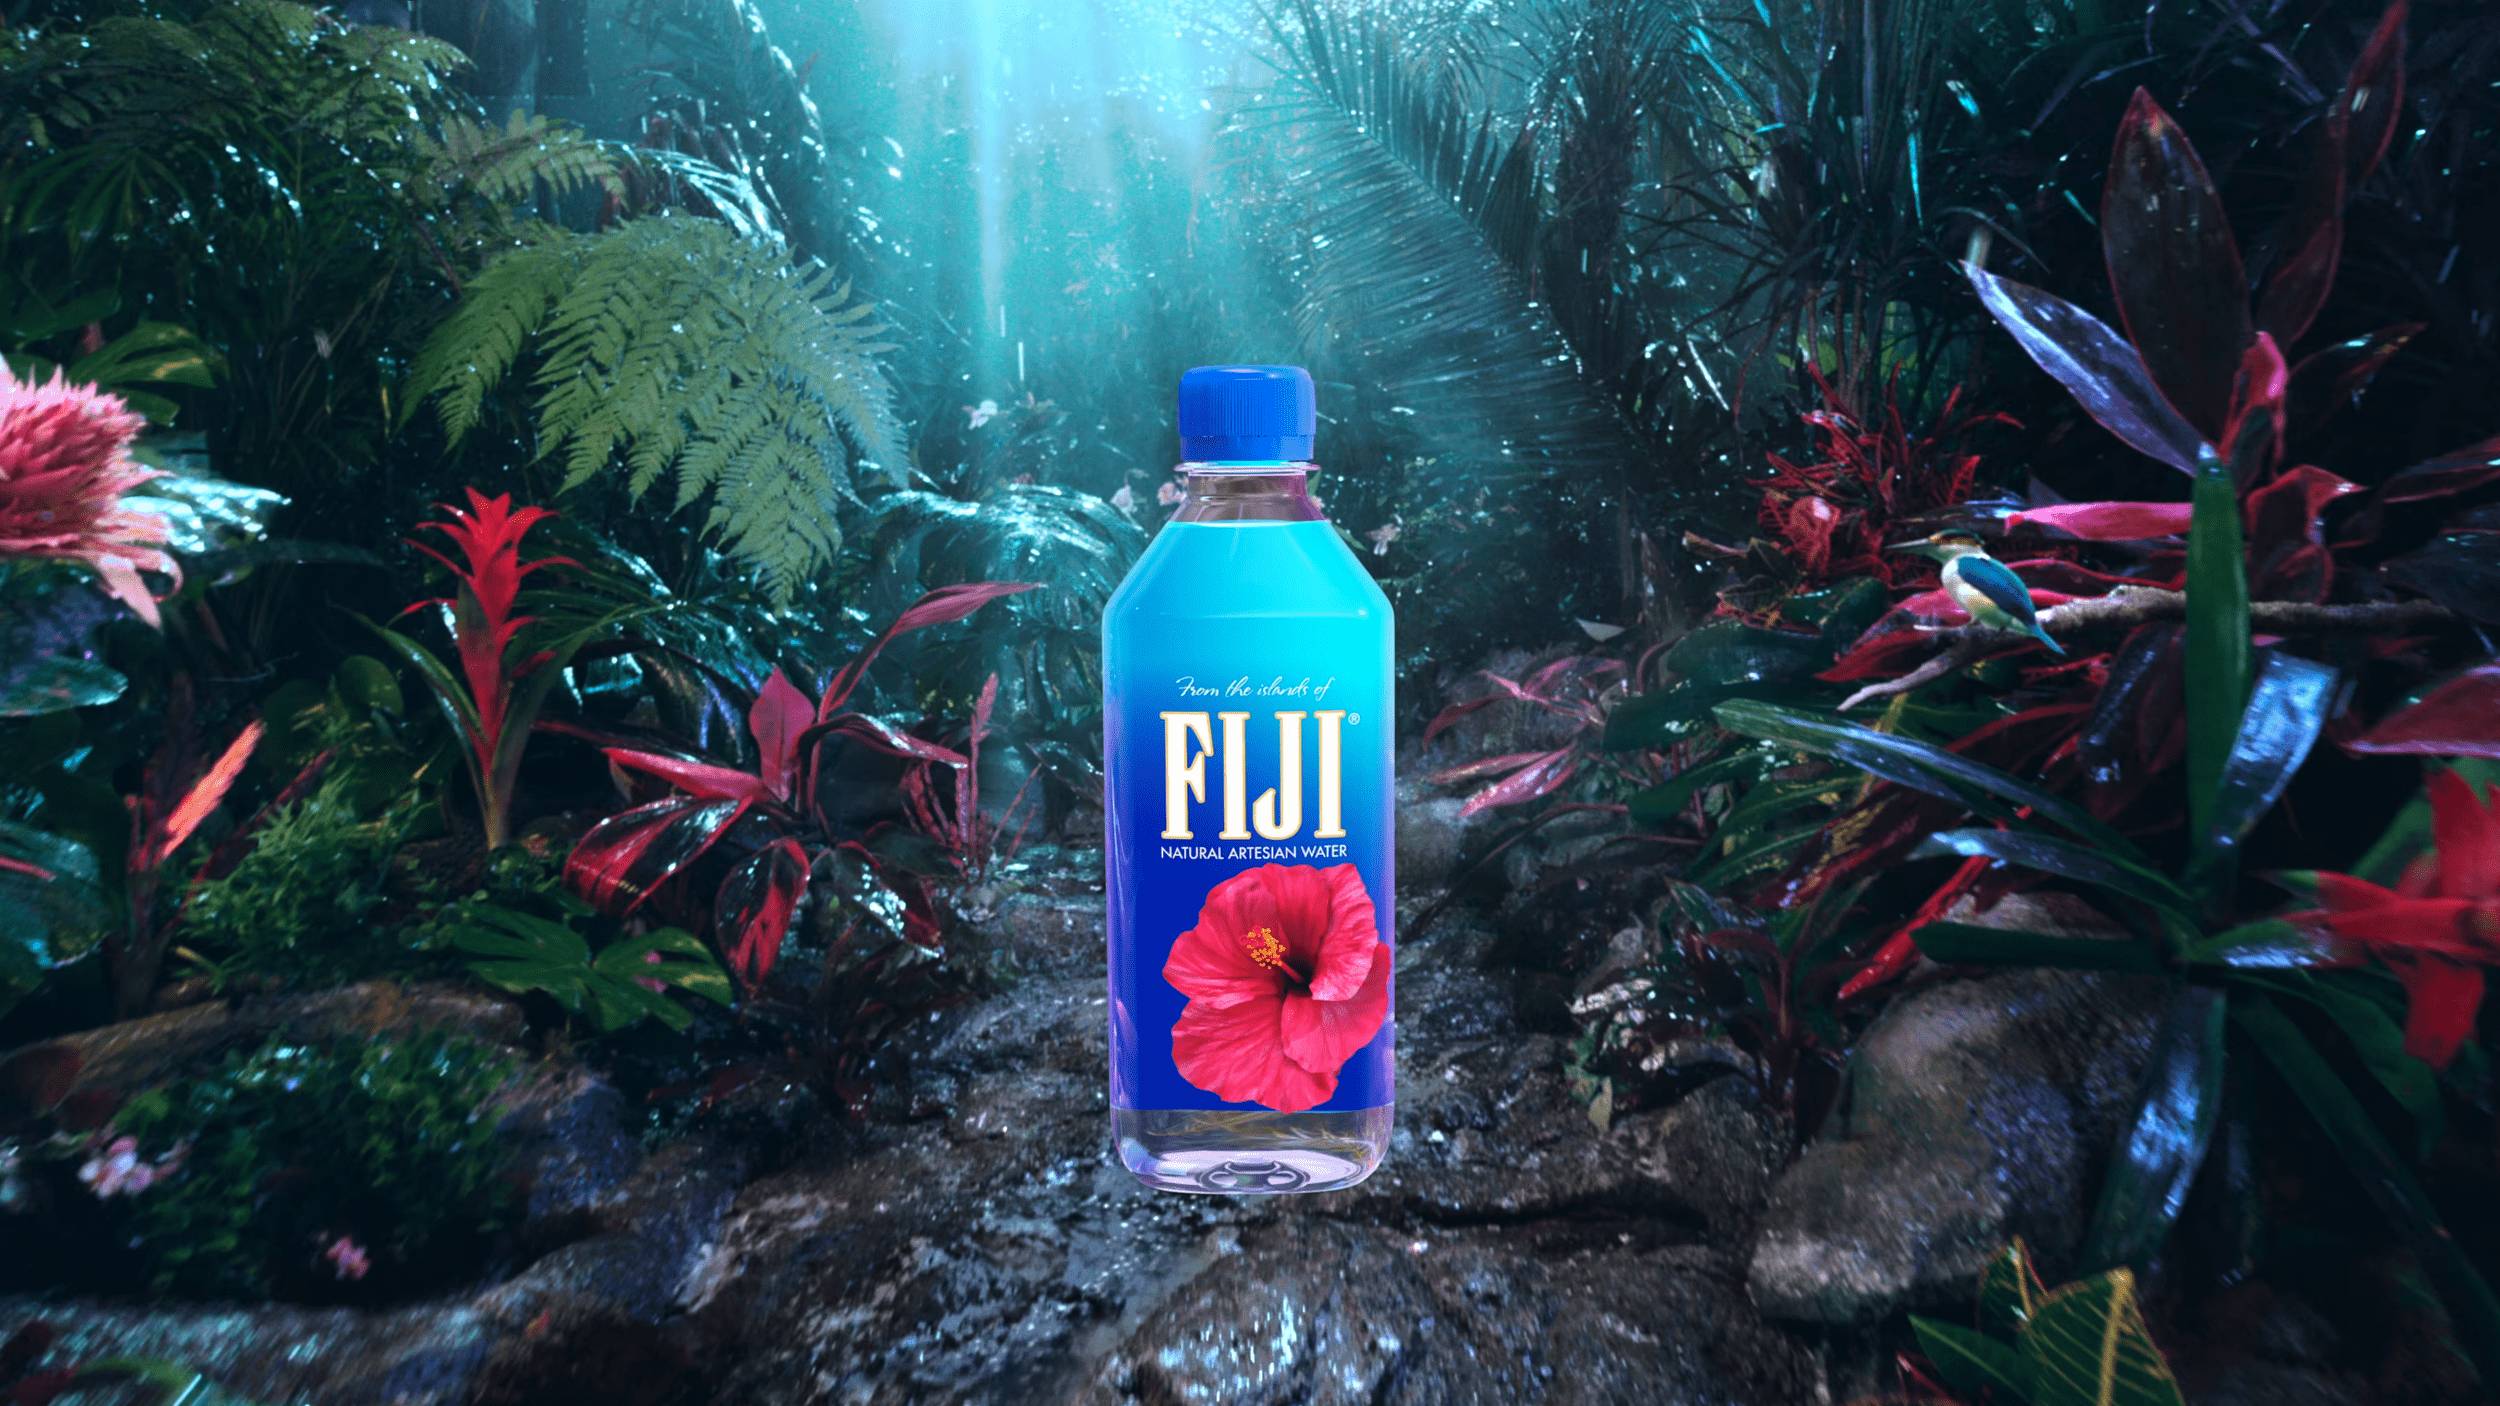 Fiji Water Bottle Wallpapers - Top Free Fiji Water Bottle Backgrounds ...